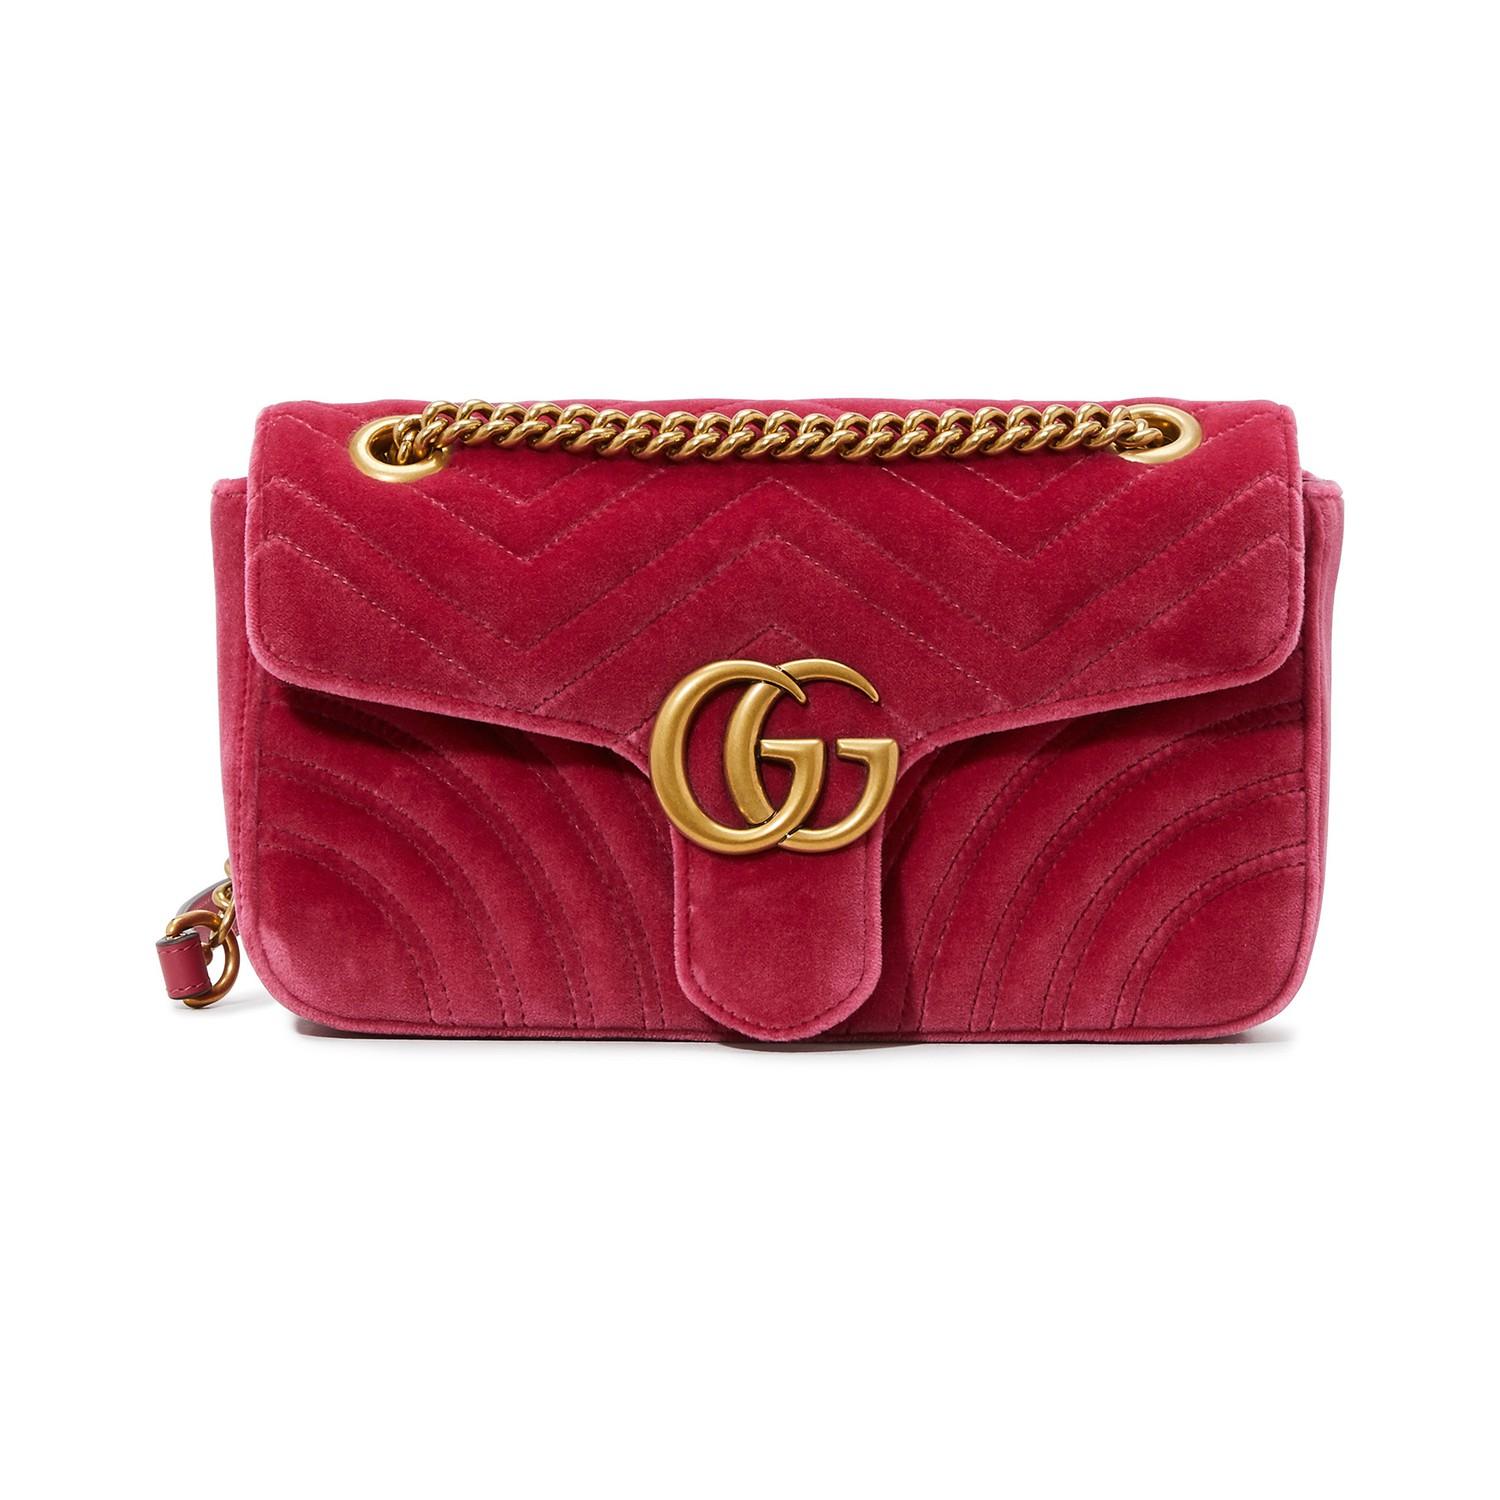 Gucci GG Marmont Velvet Shoulder Bag in Pink - Save 13% - Lyst